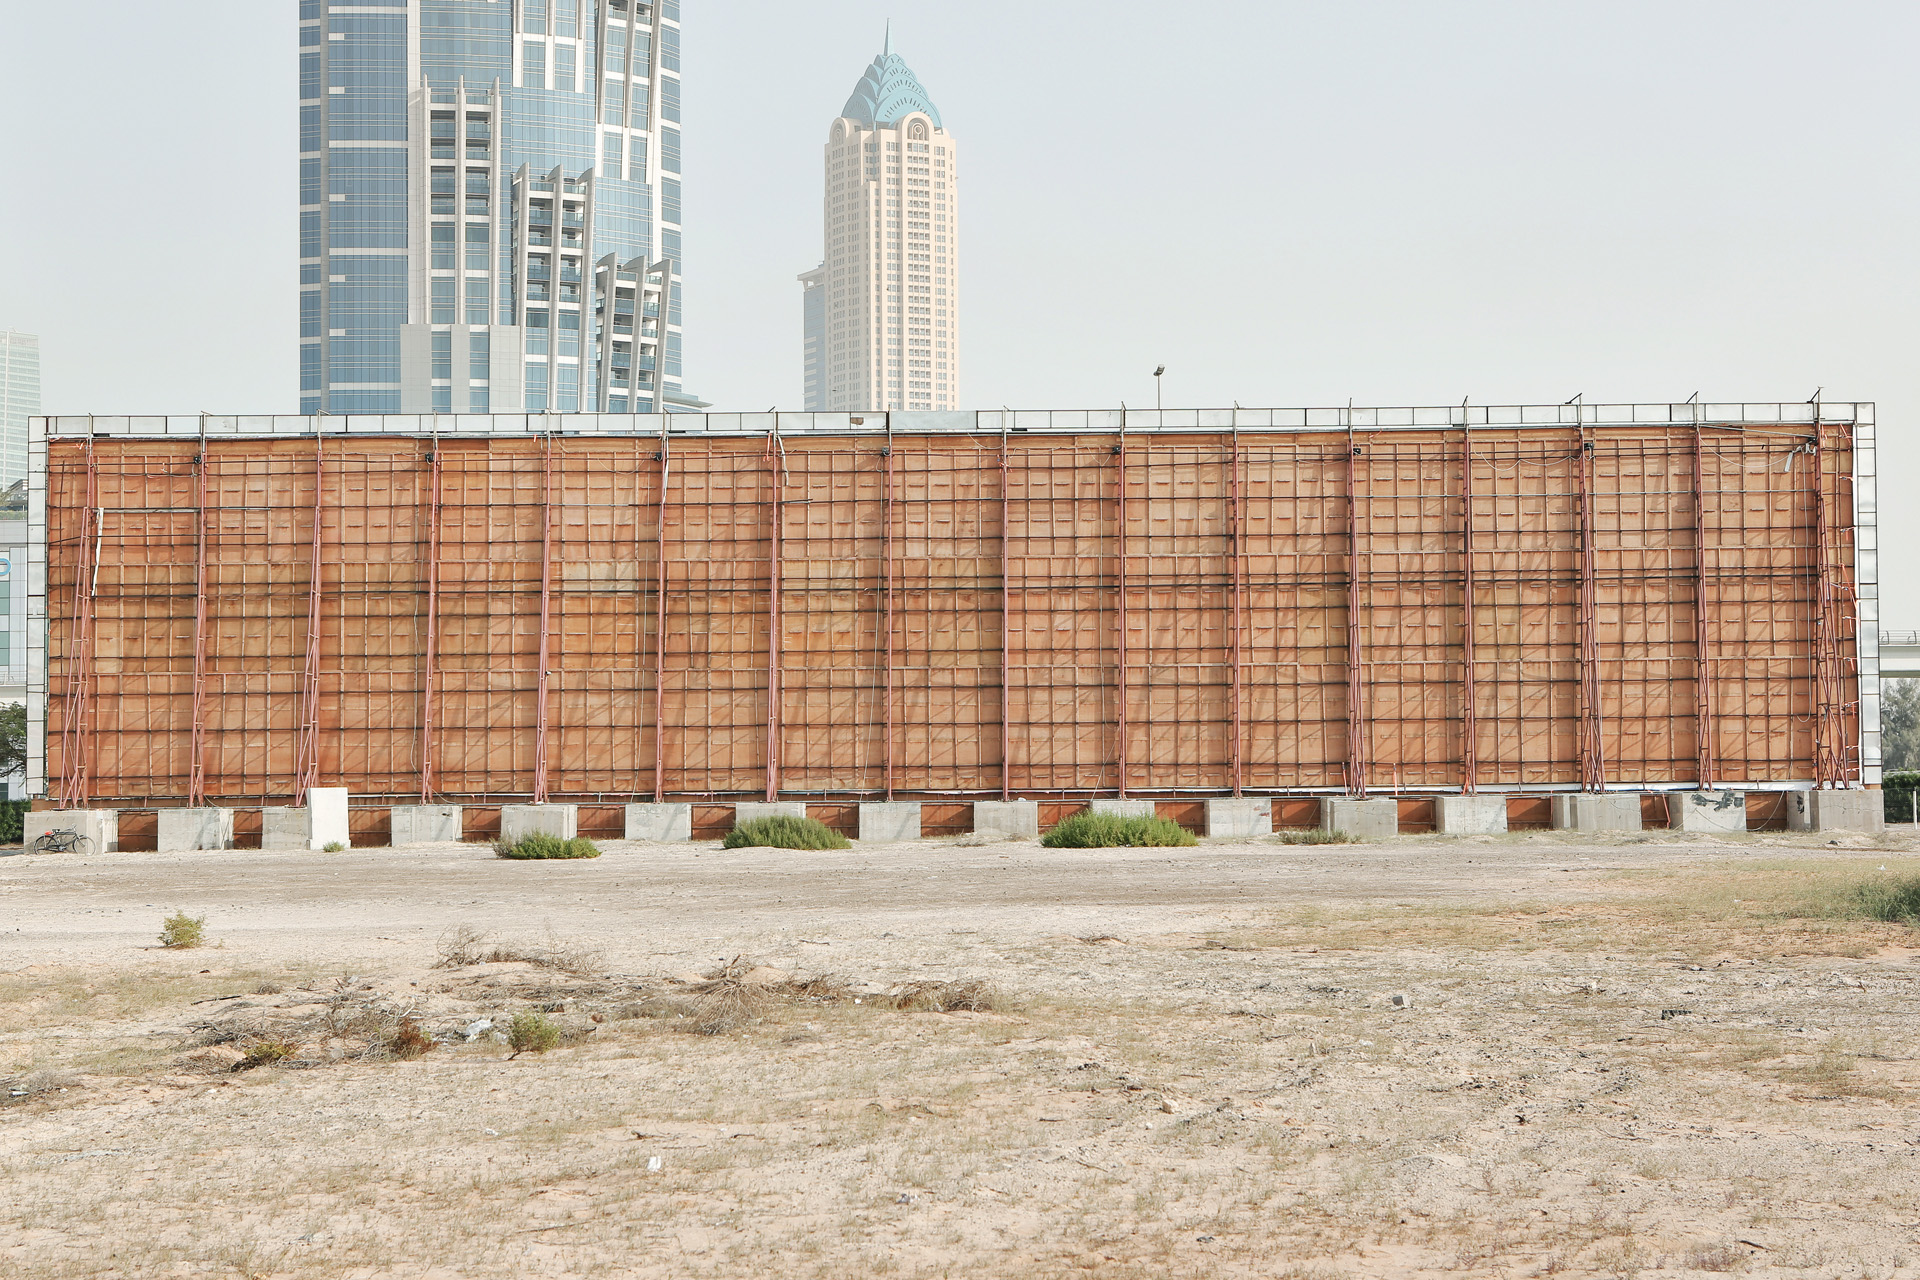  Billboards du projet Beyond r�alis� en f�vrier 2013 � Dubai  